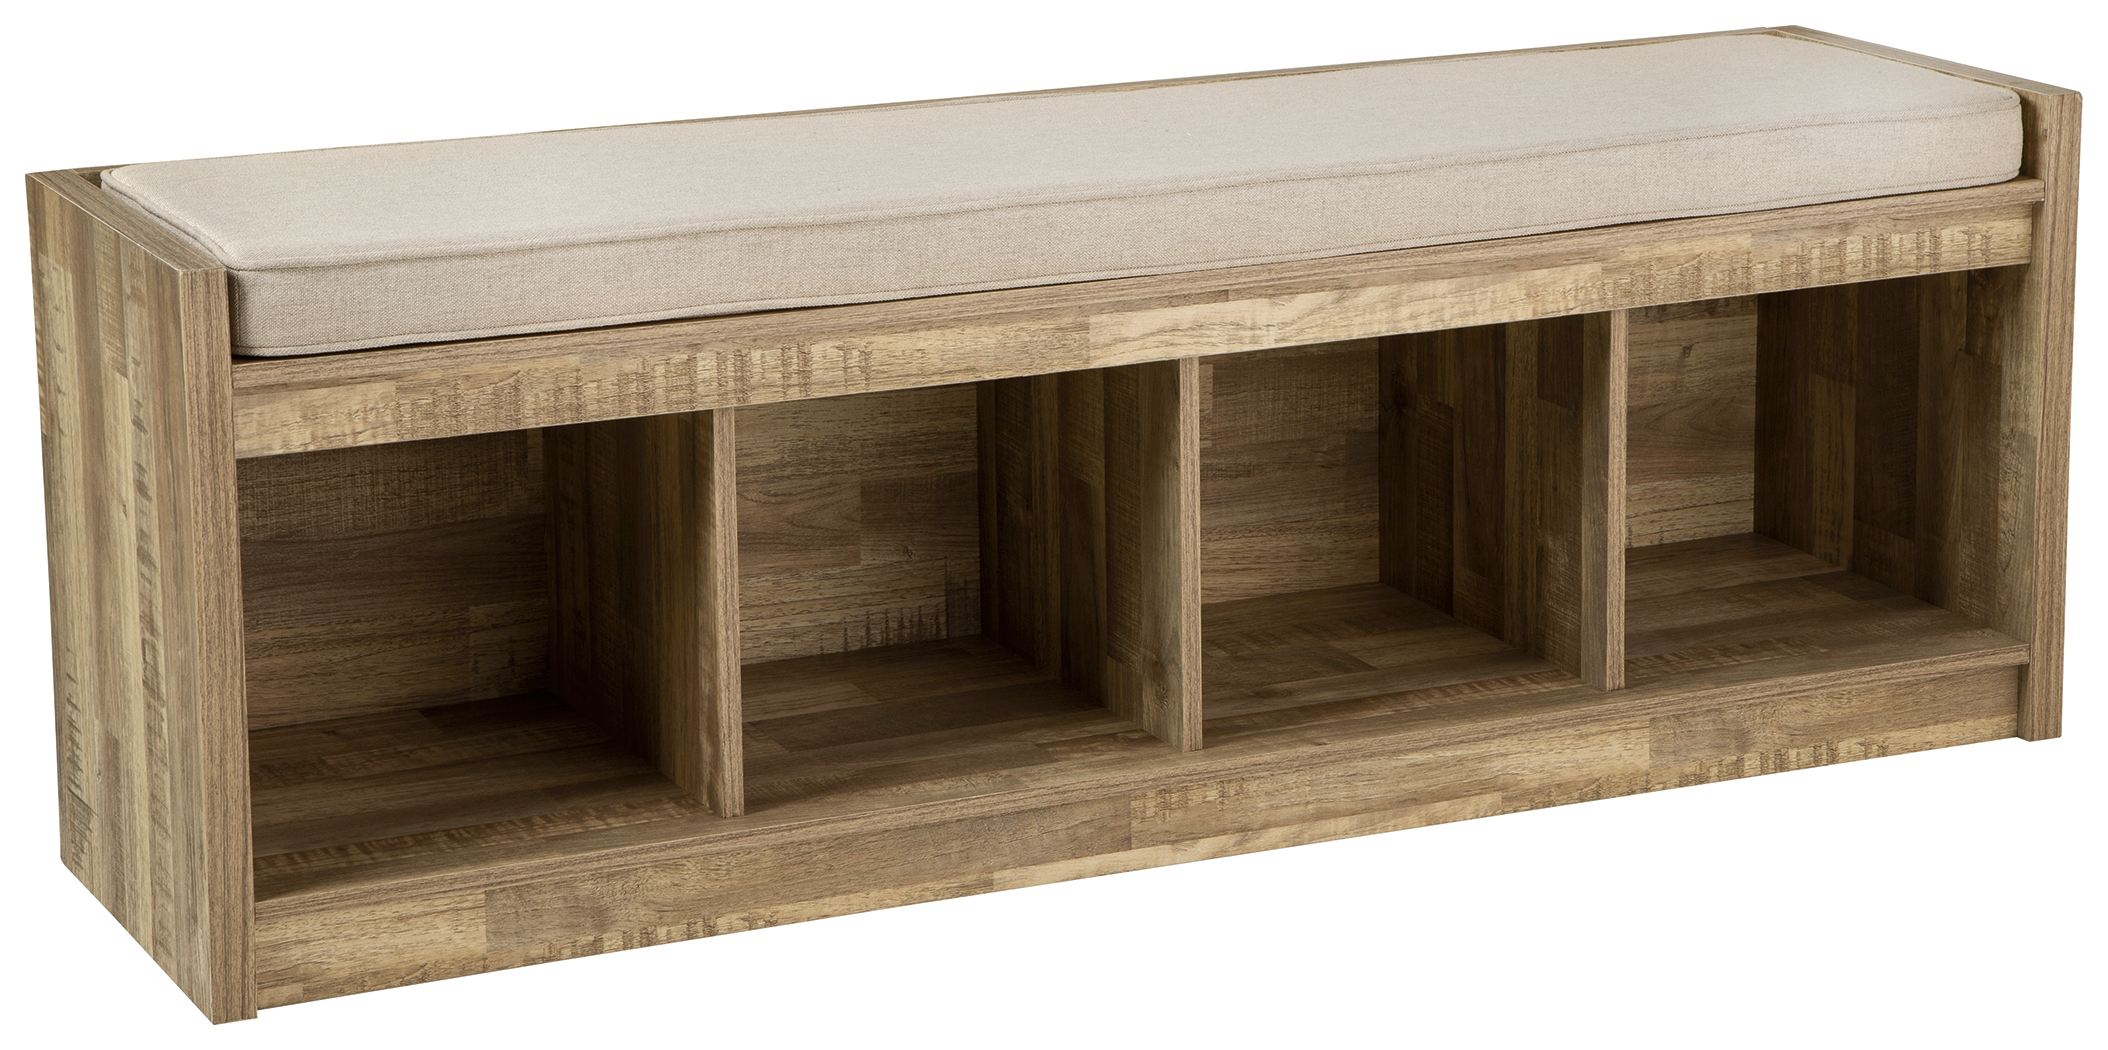 Ashley Furniture - Gerdanet - Beige - Bench With 4 Open Storages - EZ ...